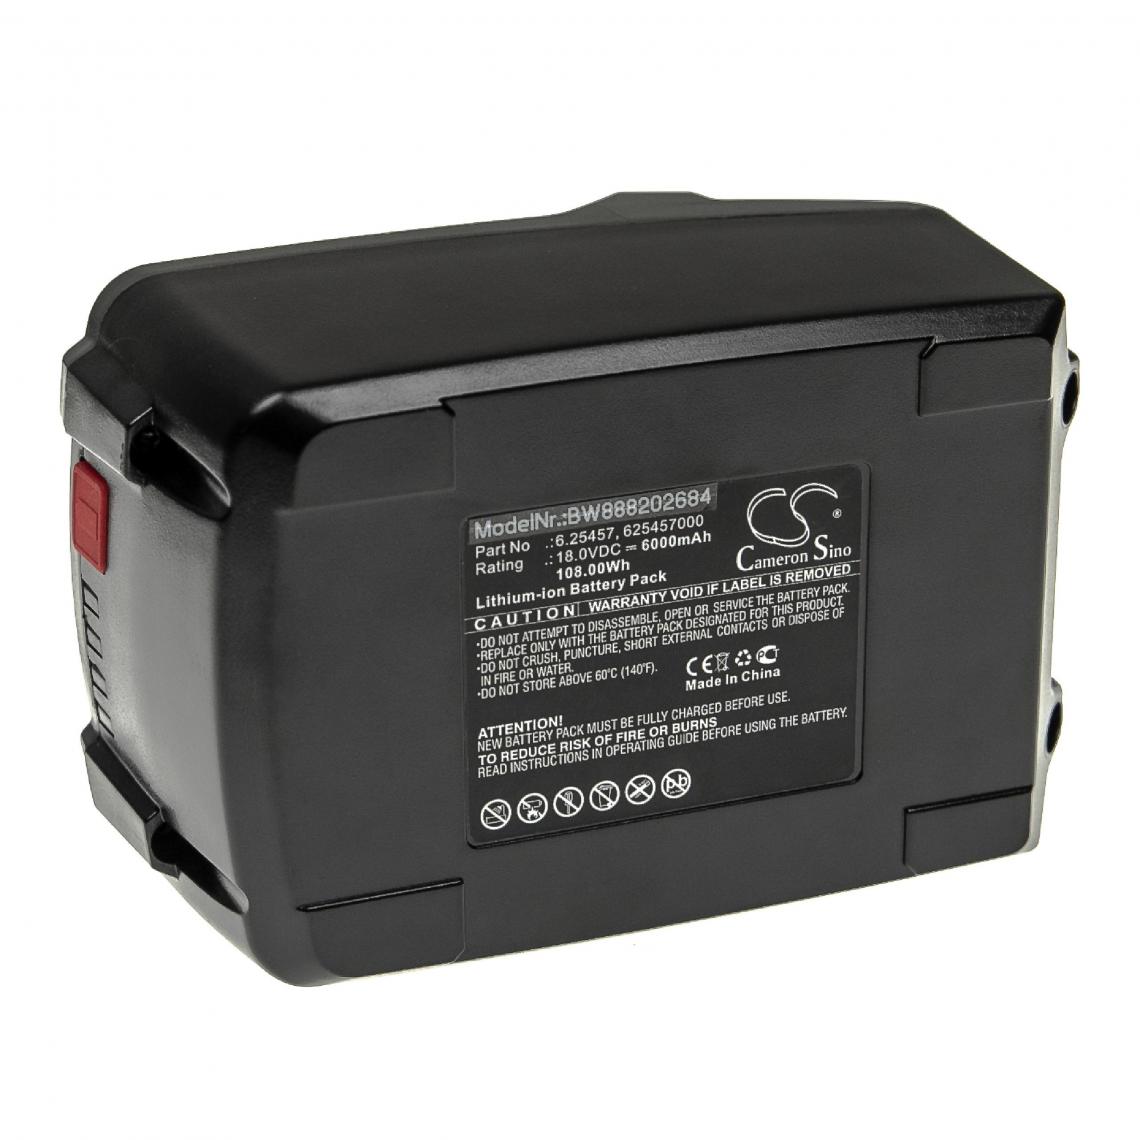 Vhbw - vhbw Batterie compatible avec Metabo MT 18 LTX, MT 18 LTX 613021650, MT 18 LTX 613021840 outil électrique (6000mAh Li-ion 18 V) - Autre appareil de mesure